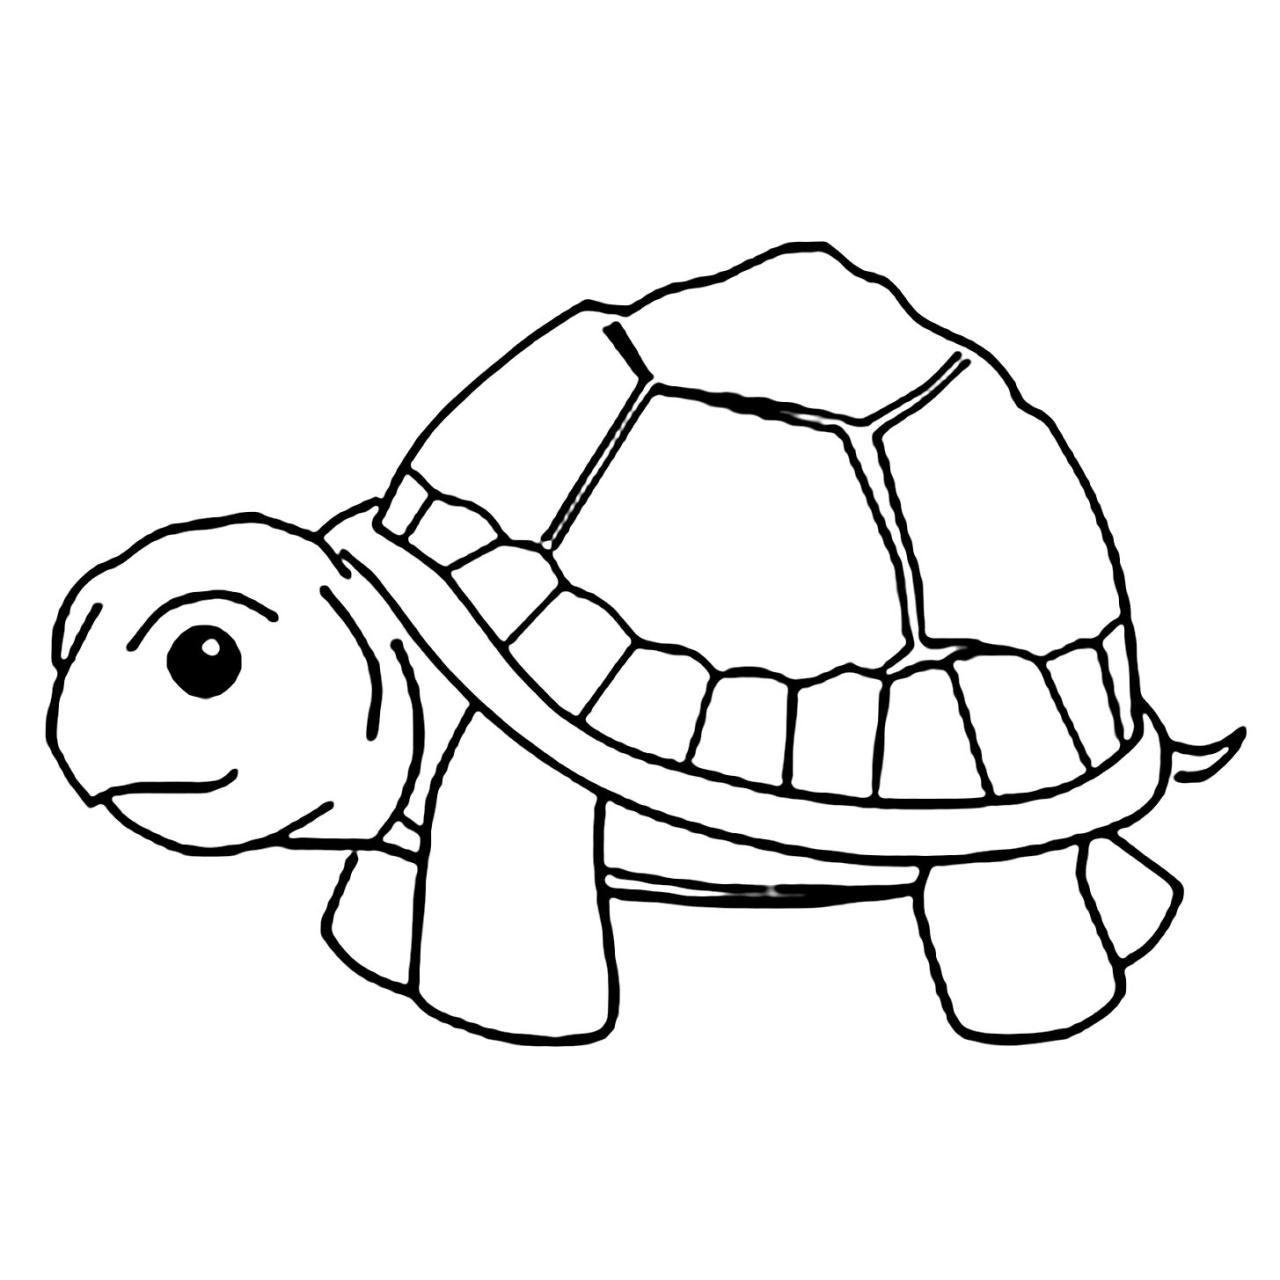 Xem Hơn 100 Ảnh Về Hình Vẽ Con Rùa - Daotaonec